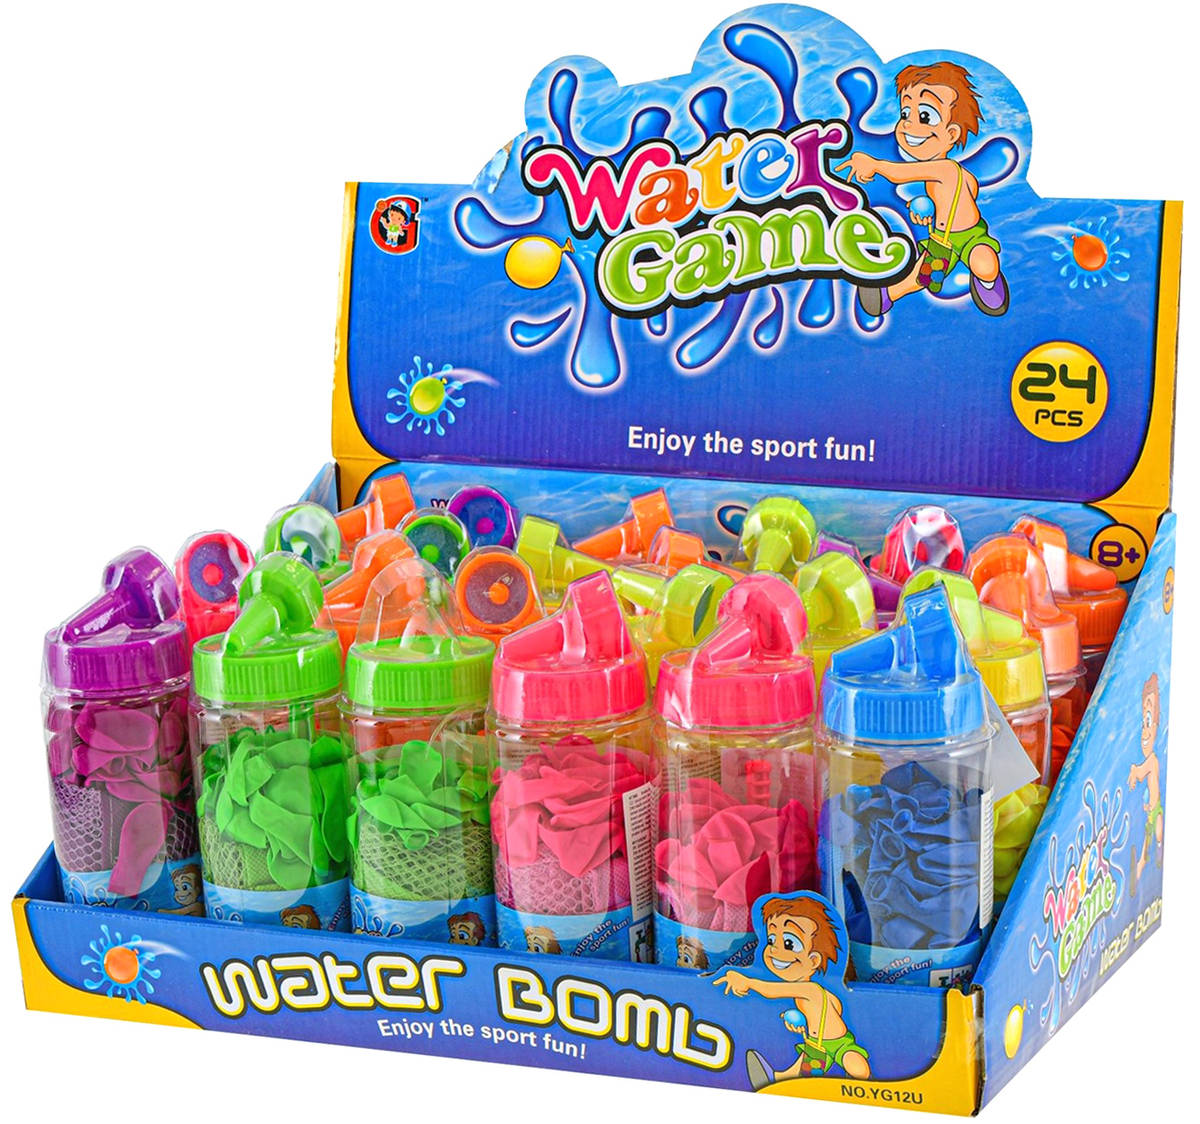 MAC TOYS Vodní bomby barevné balónky na vodu set v dóze 6 barev